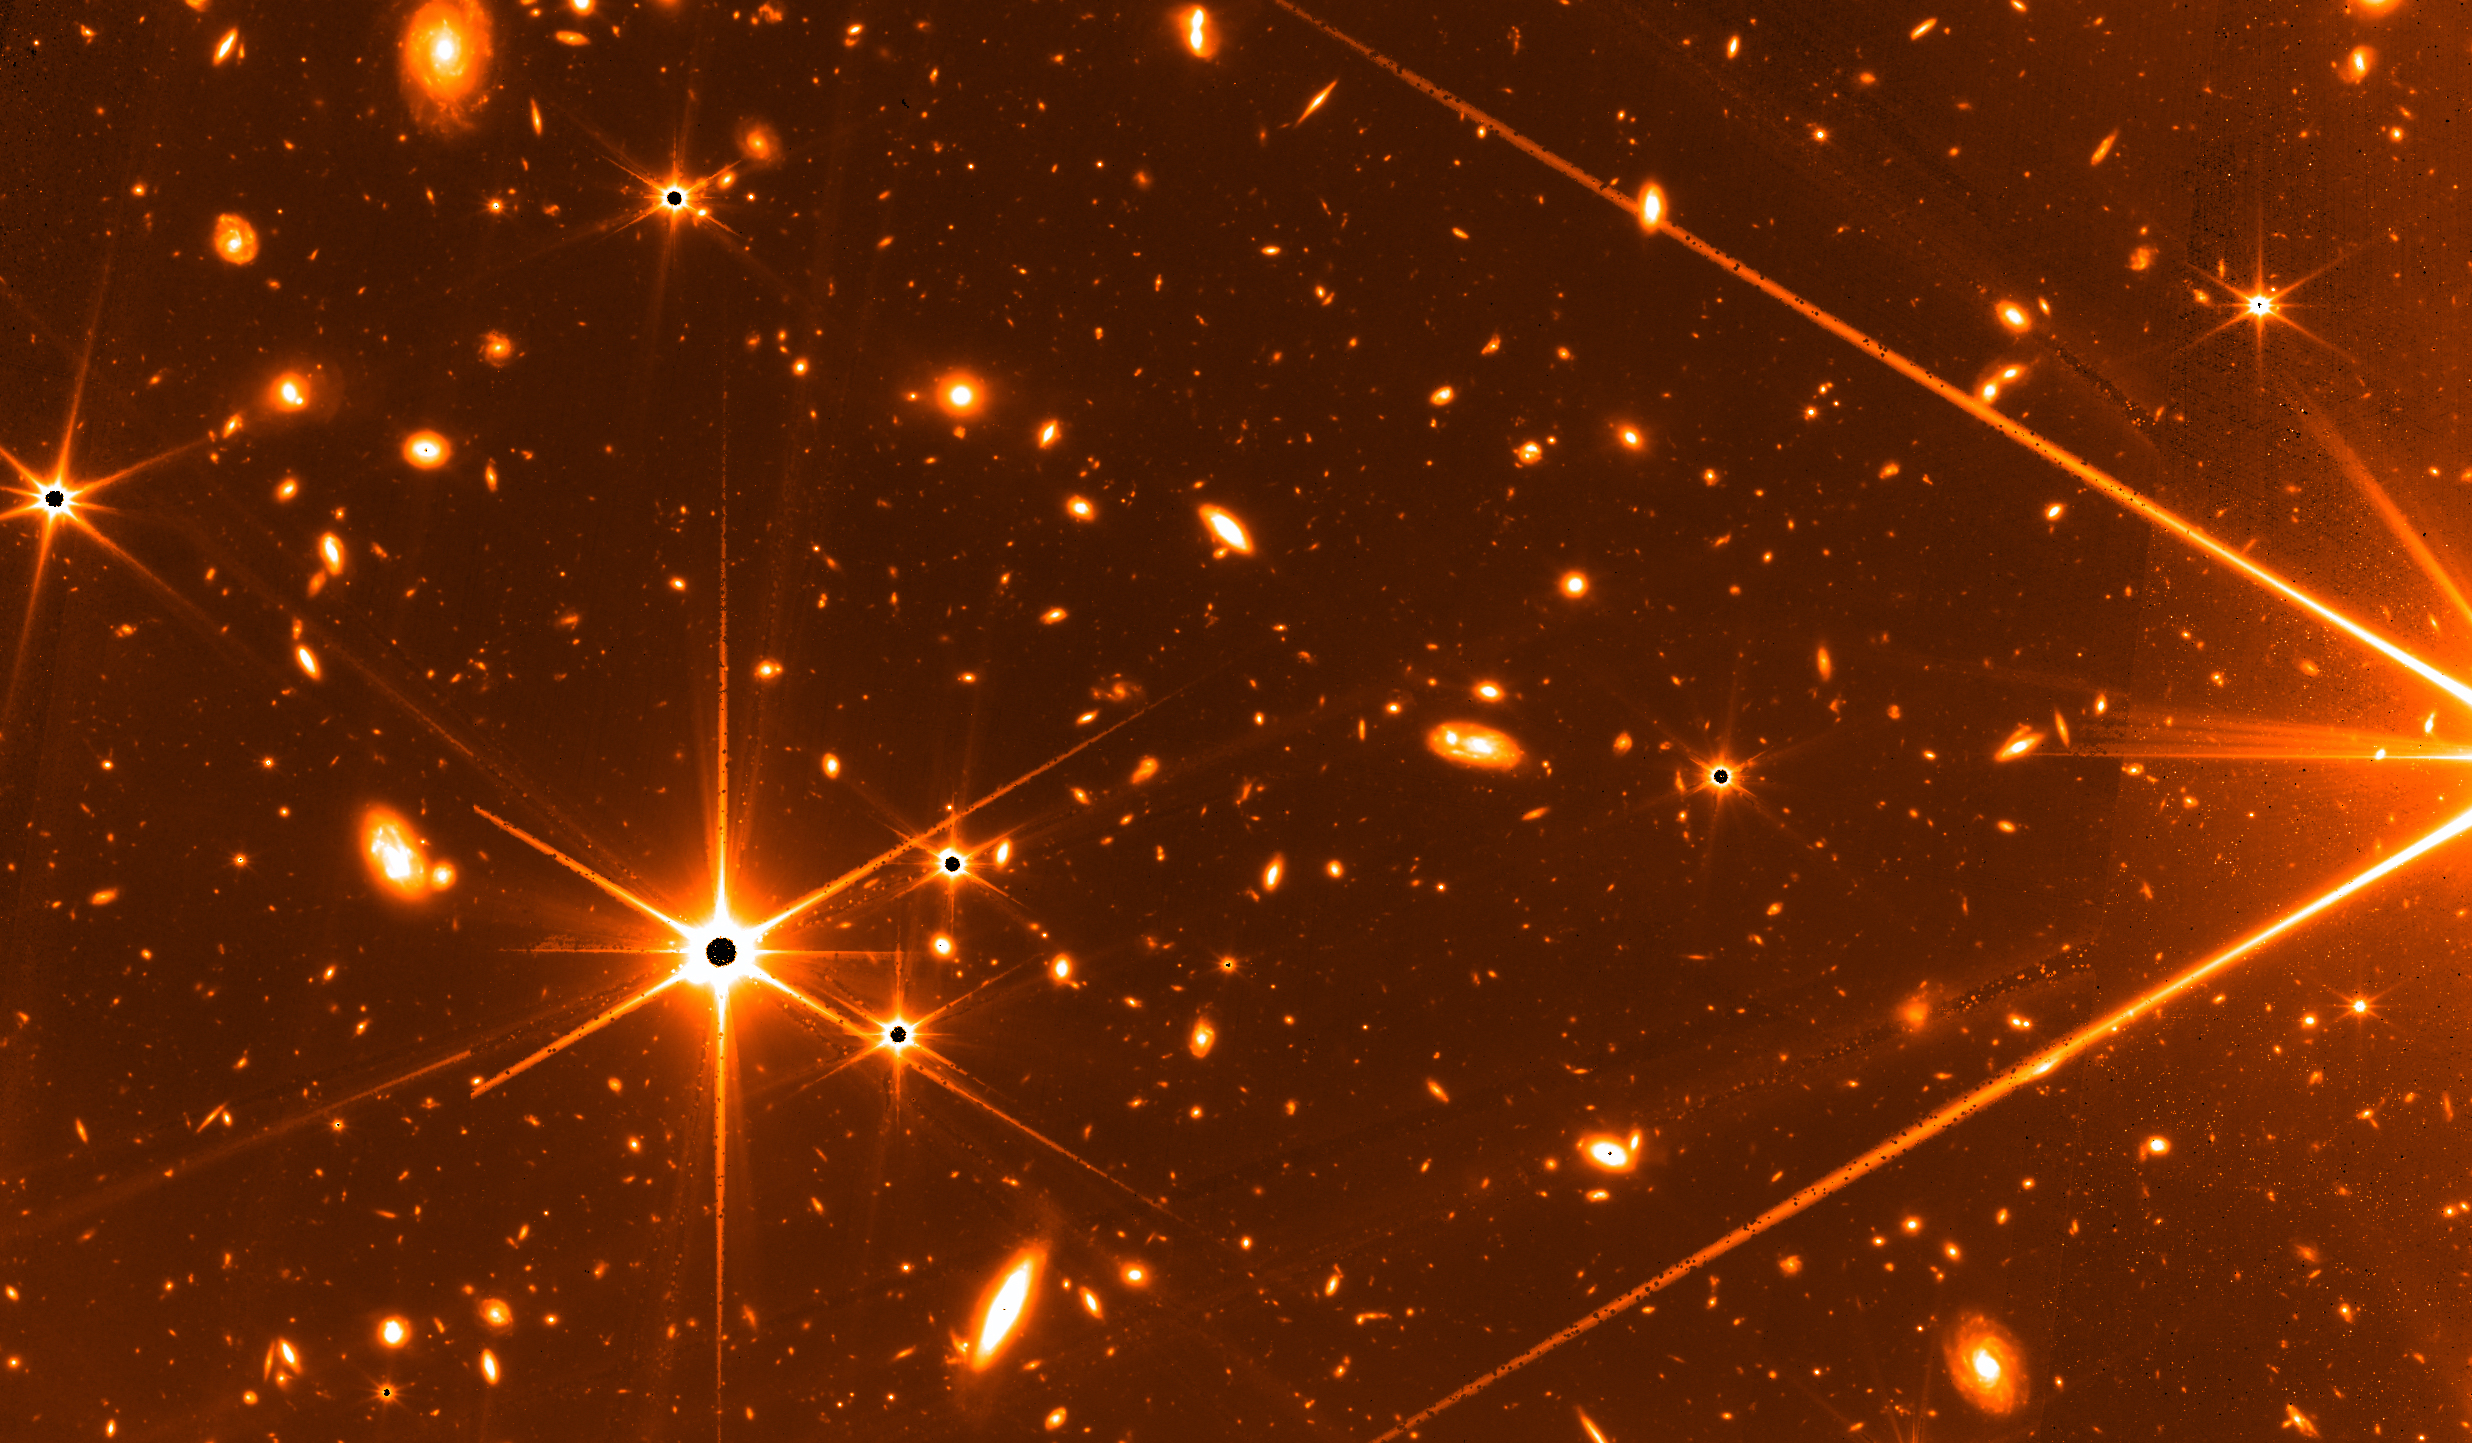 Cum arata universul, vazut prin telescopul James Webb. Primele imagini trimise din spatiu